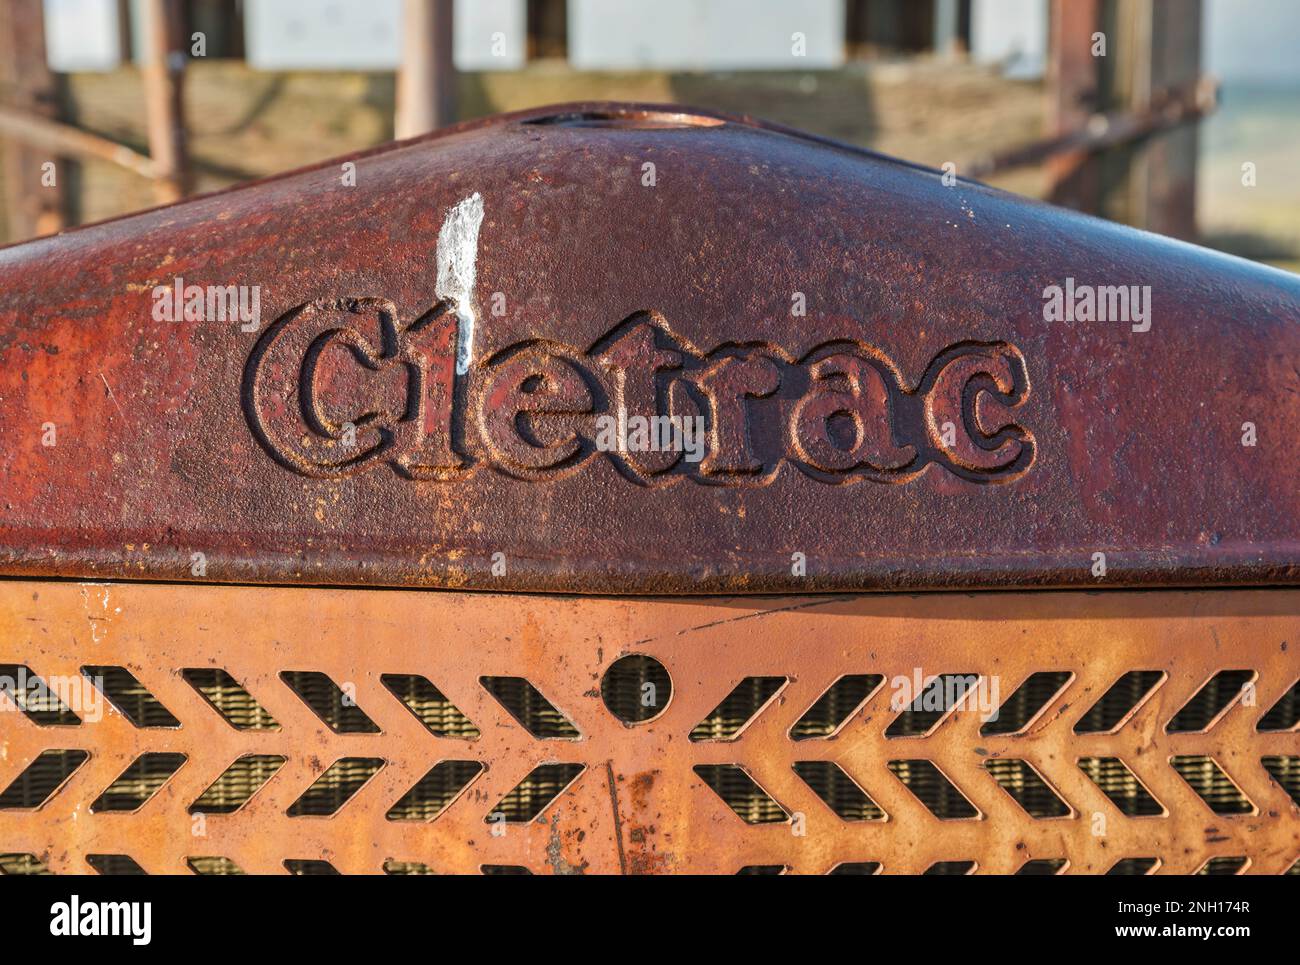 Targhetta del vecchio trattore cingolato Cletrac conservata vicino al Goodwin Education Center, presso l'ex ranch, Carrizo Plain National Monument, California, USA Foto Stock